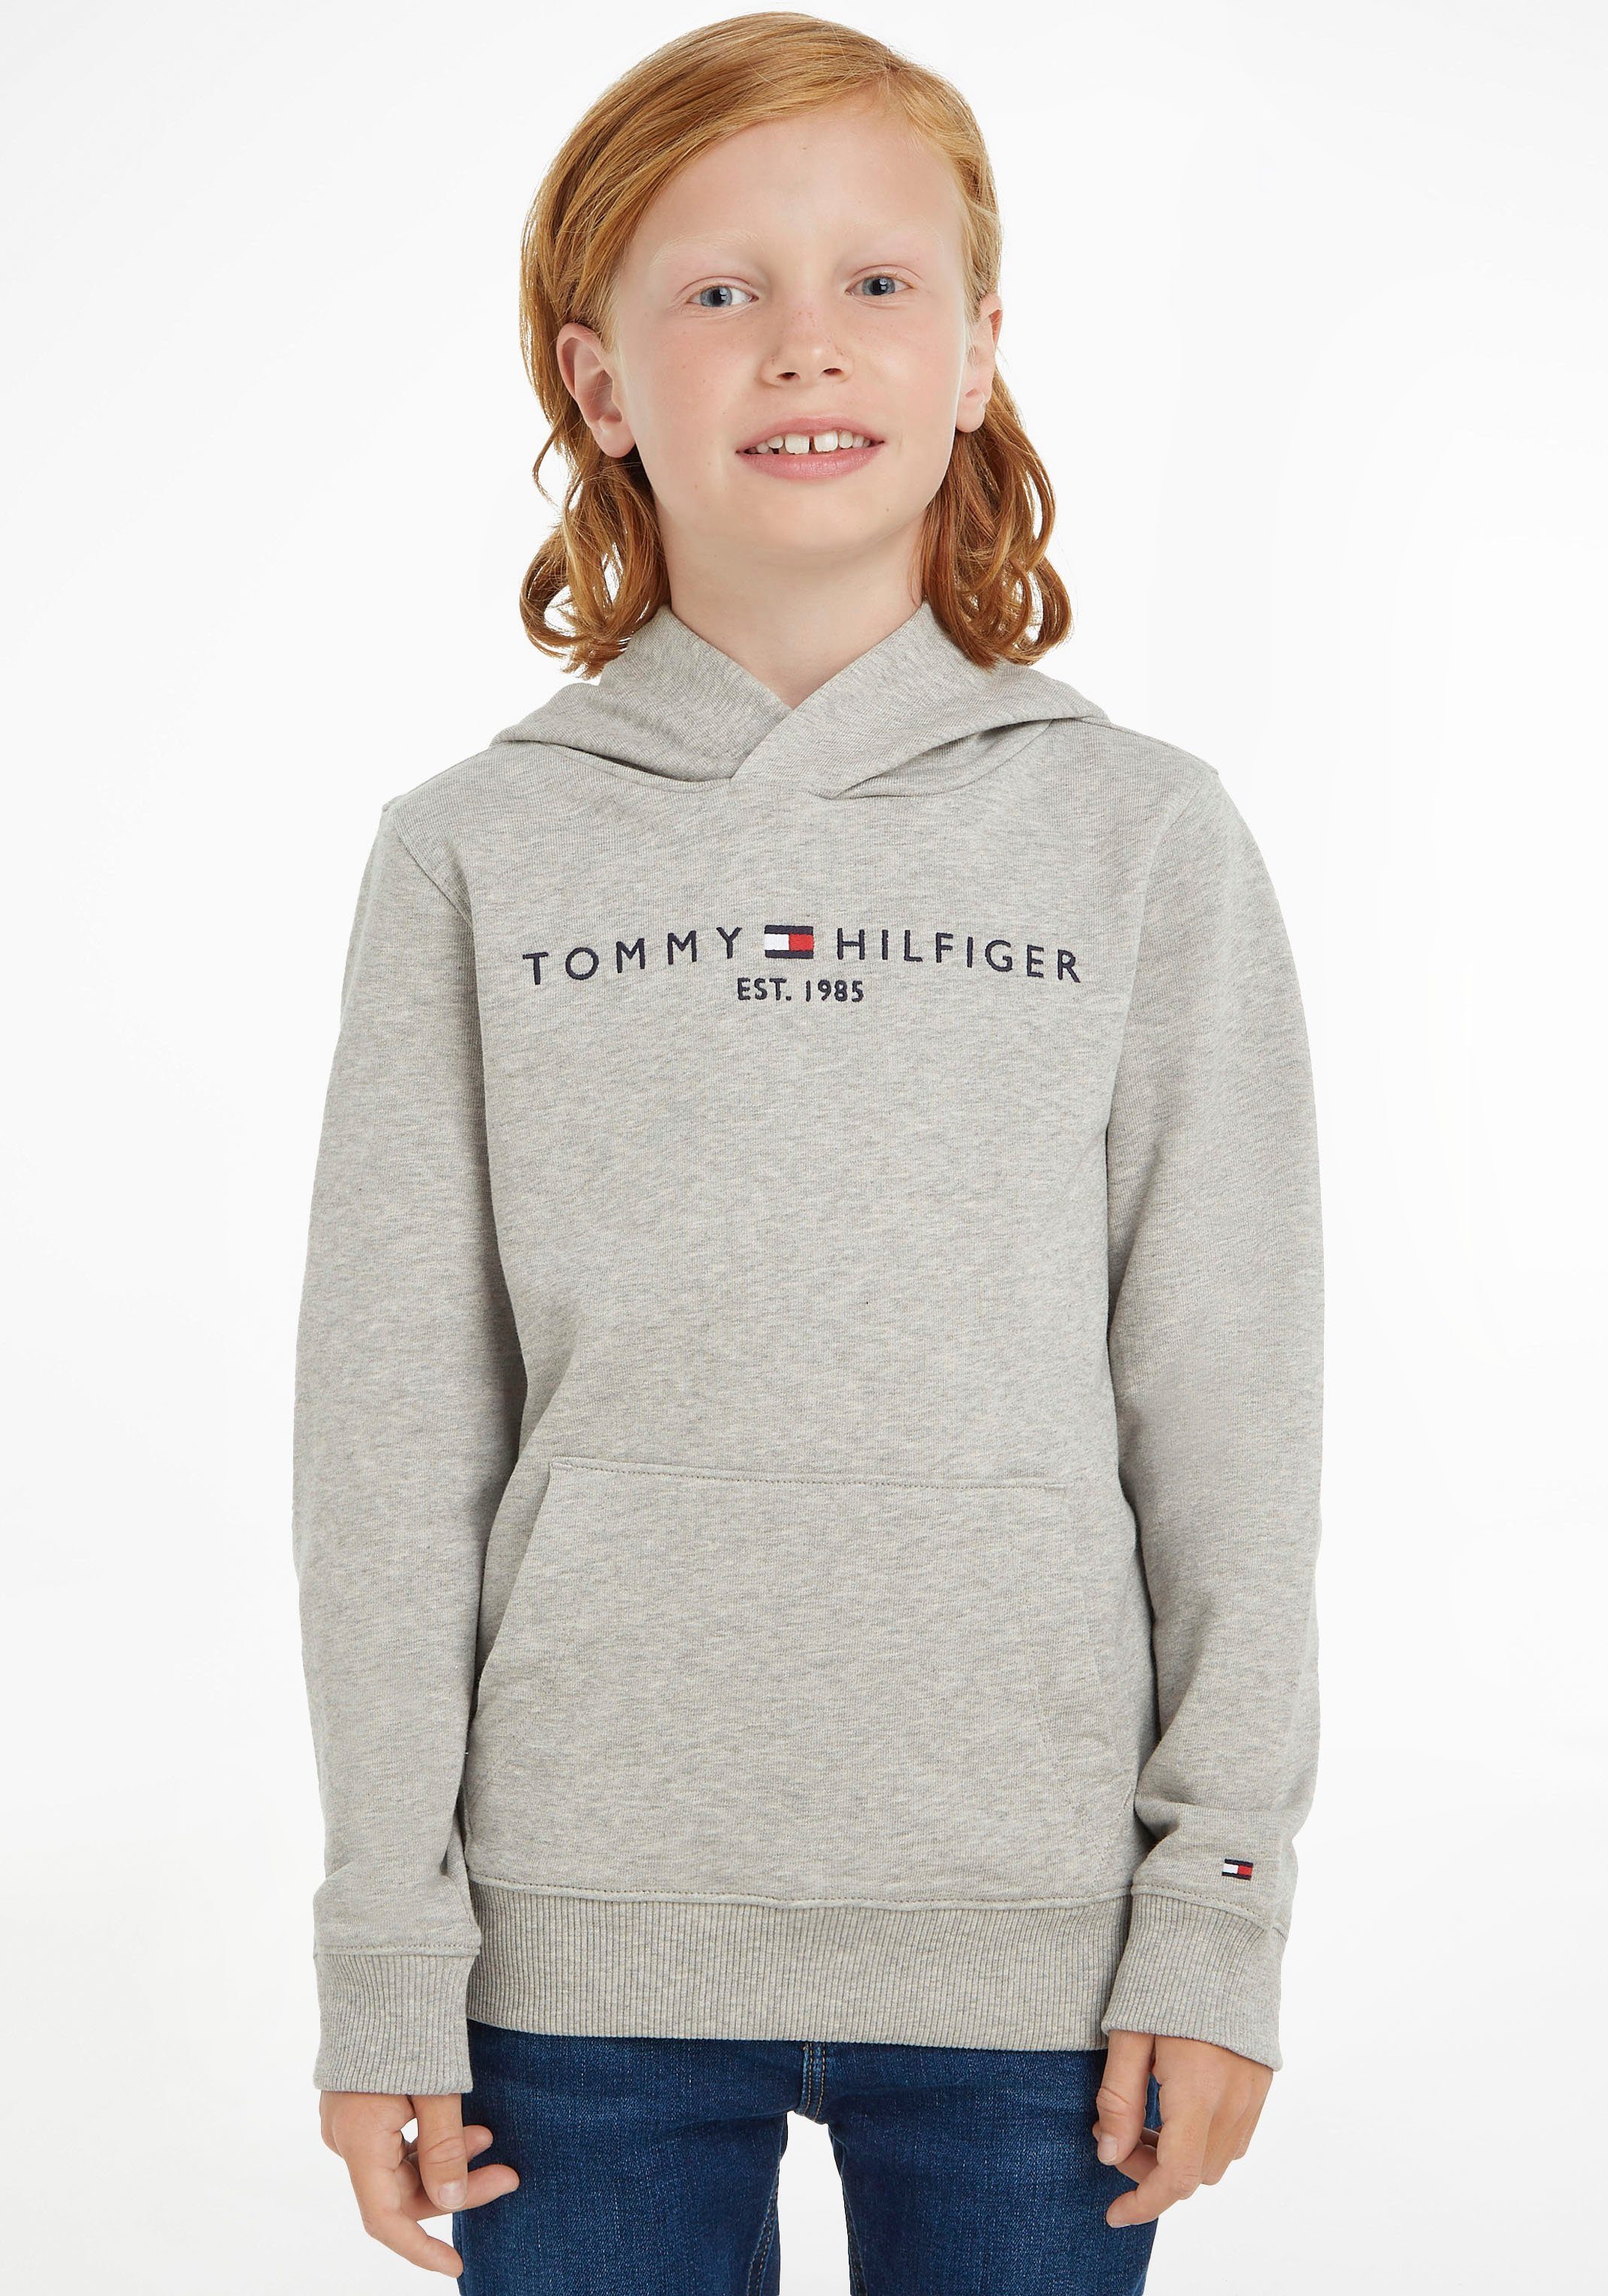 Kapuzensweatshirt ESSENTIAL und HILFIGER HOODIE für Tommy Mädchen, TOMMY Sweatshirt Jungen Hilfiger von für Jungen und Mädchen